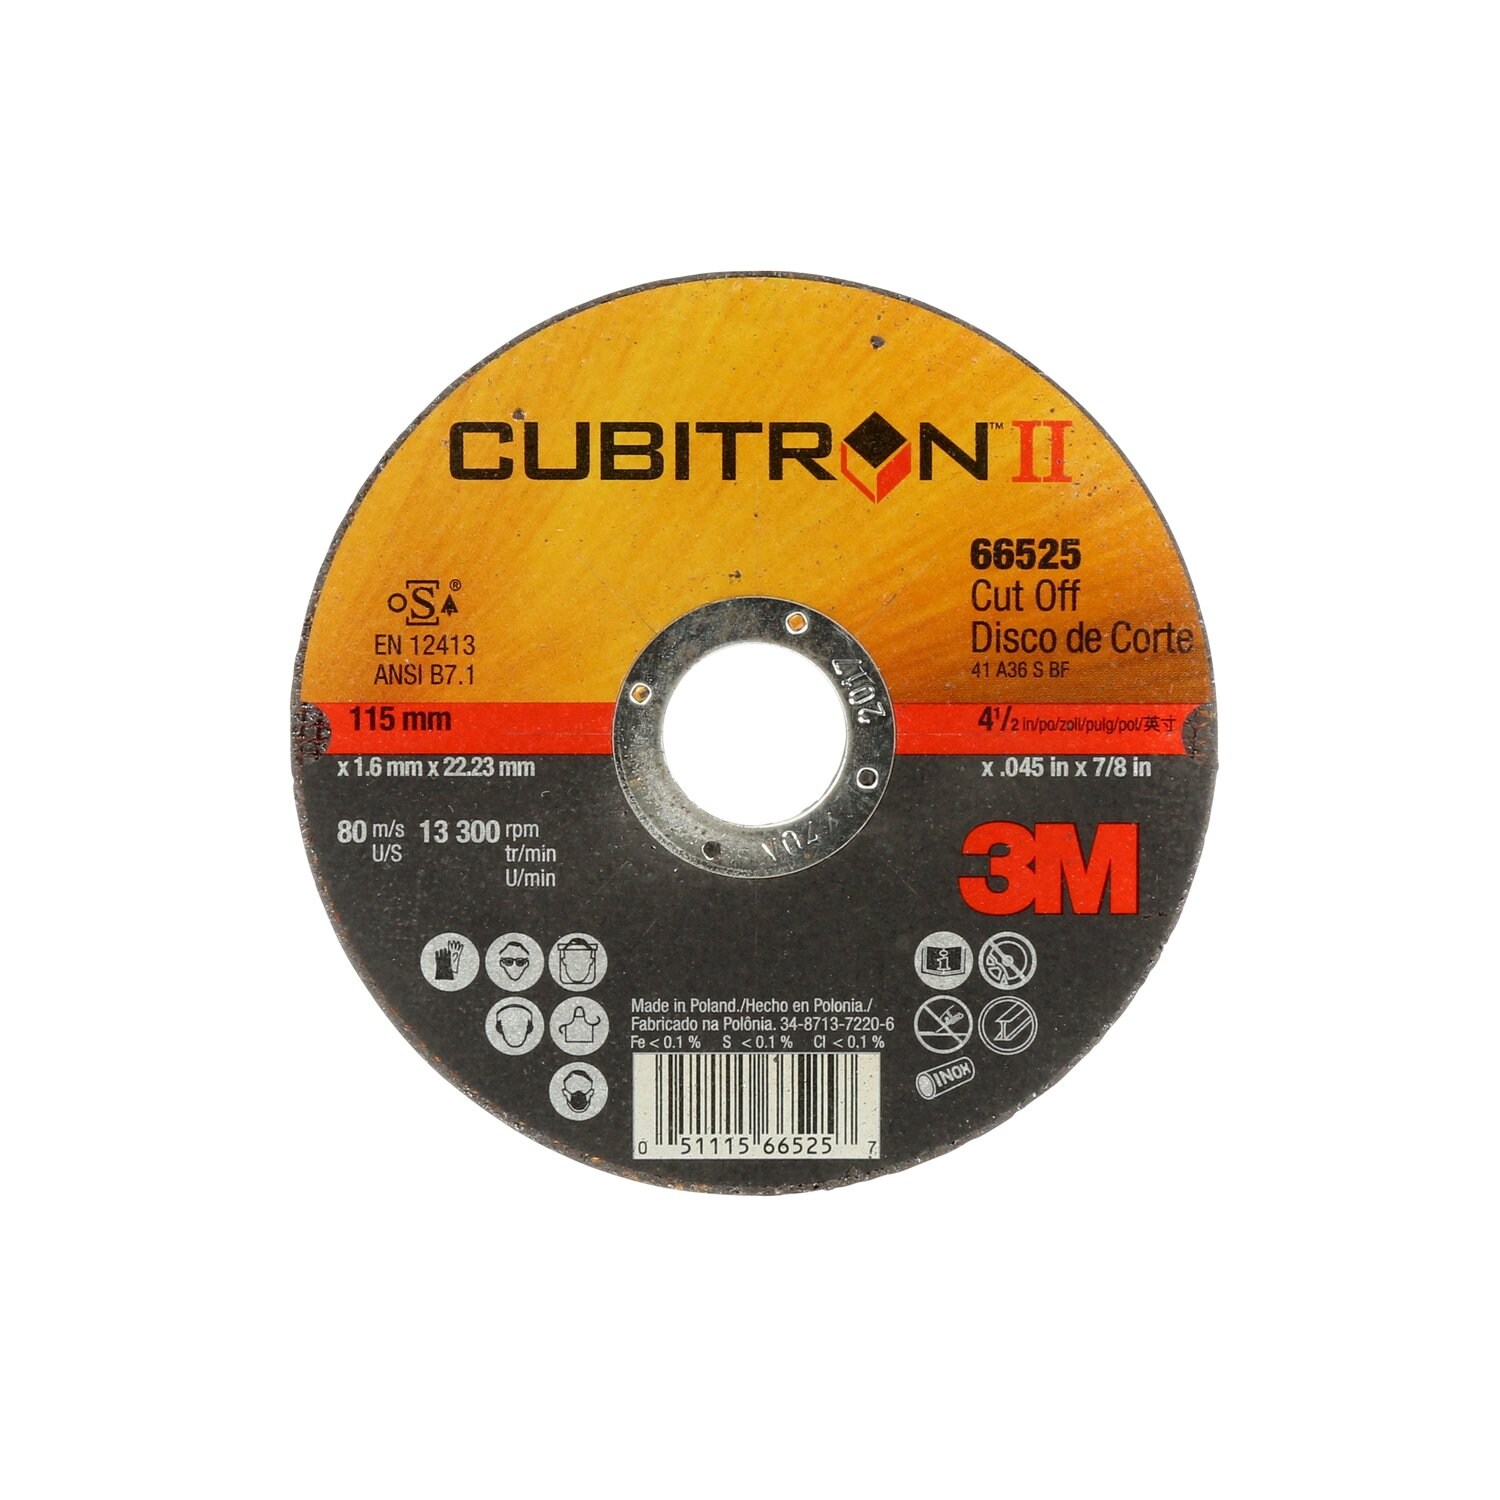 7100228953 - 3M Cubitron II Cut-Off Wheel, 66525, 36, T41, 115 mm x 1.6 mm x 22.23
mm, 25/Inner, 50 ea/Case